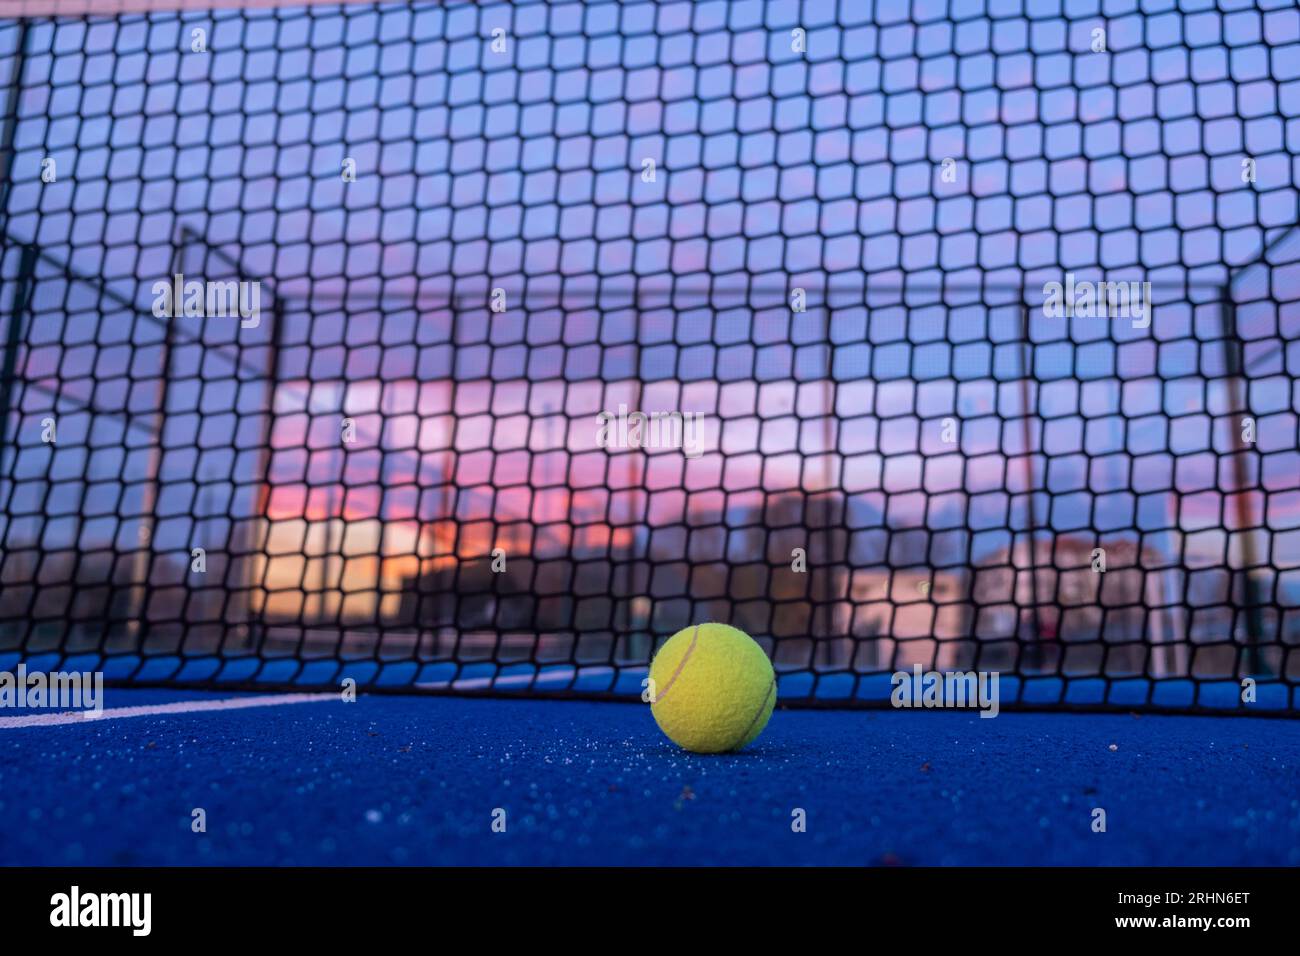 concentrazione selettiva, una palla su un campo da paddle tennis al calar della notte Foto Stock